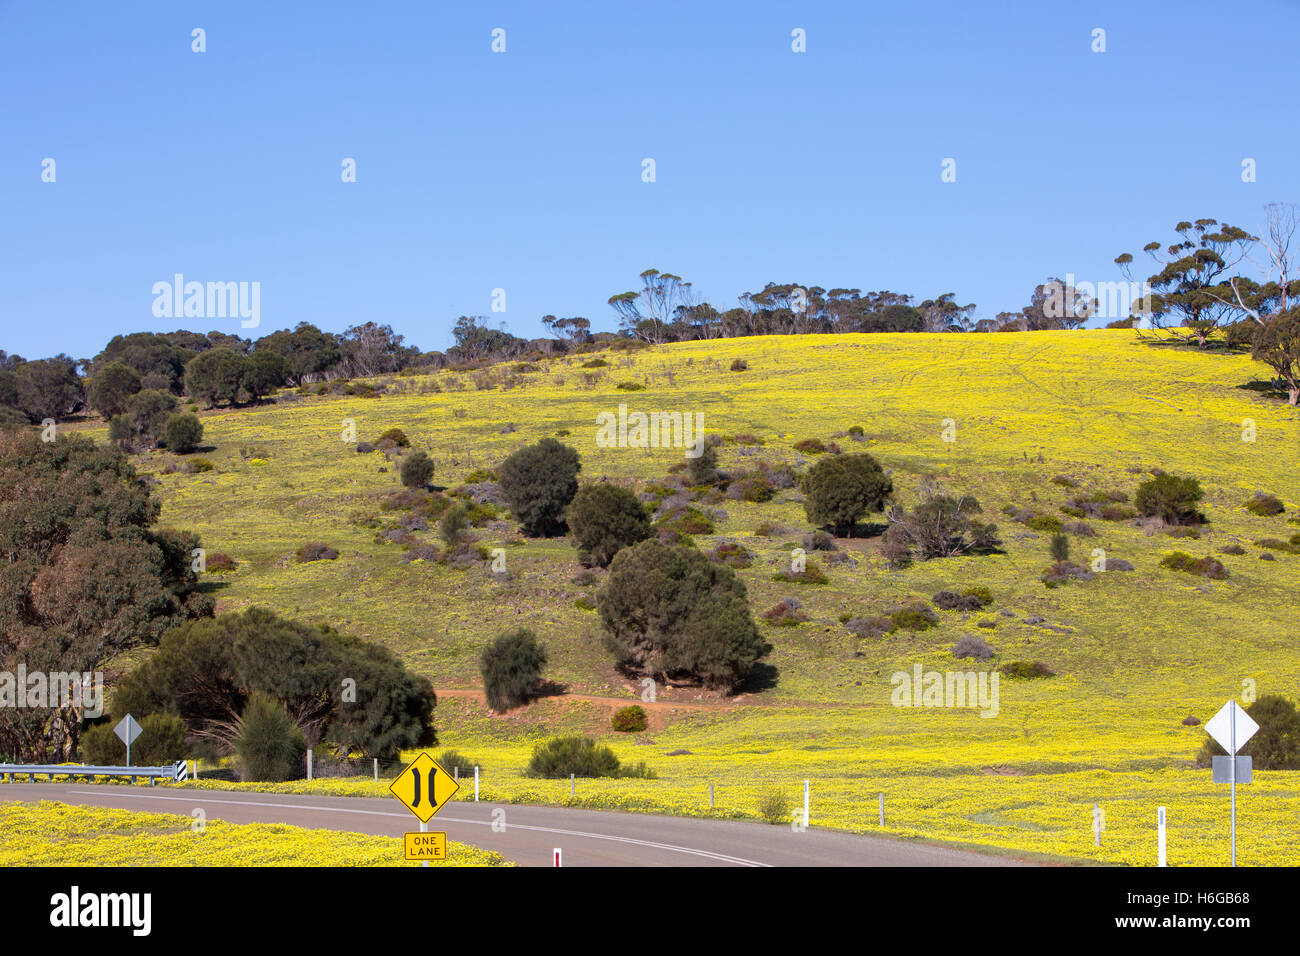 Campo con margaritas amarillas en primavera, la zona alrededor de Stokes Bay, Isla Canguro, Australia del Sur Foto de stock